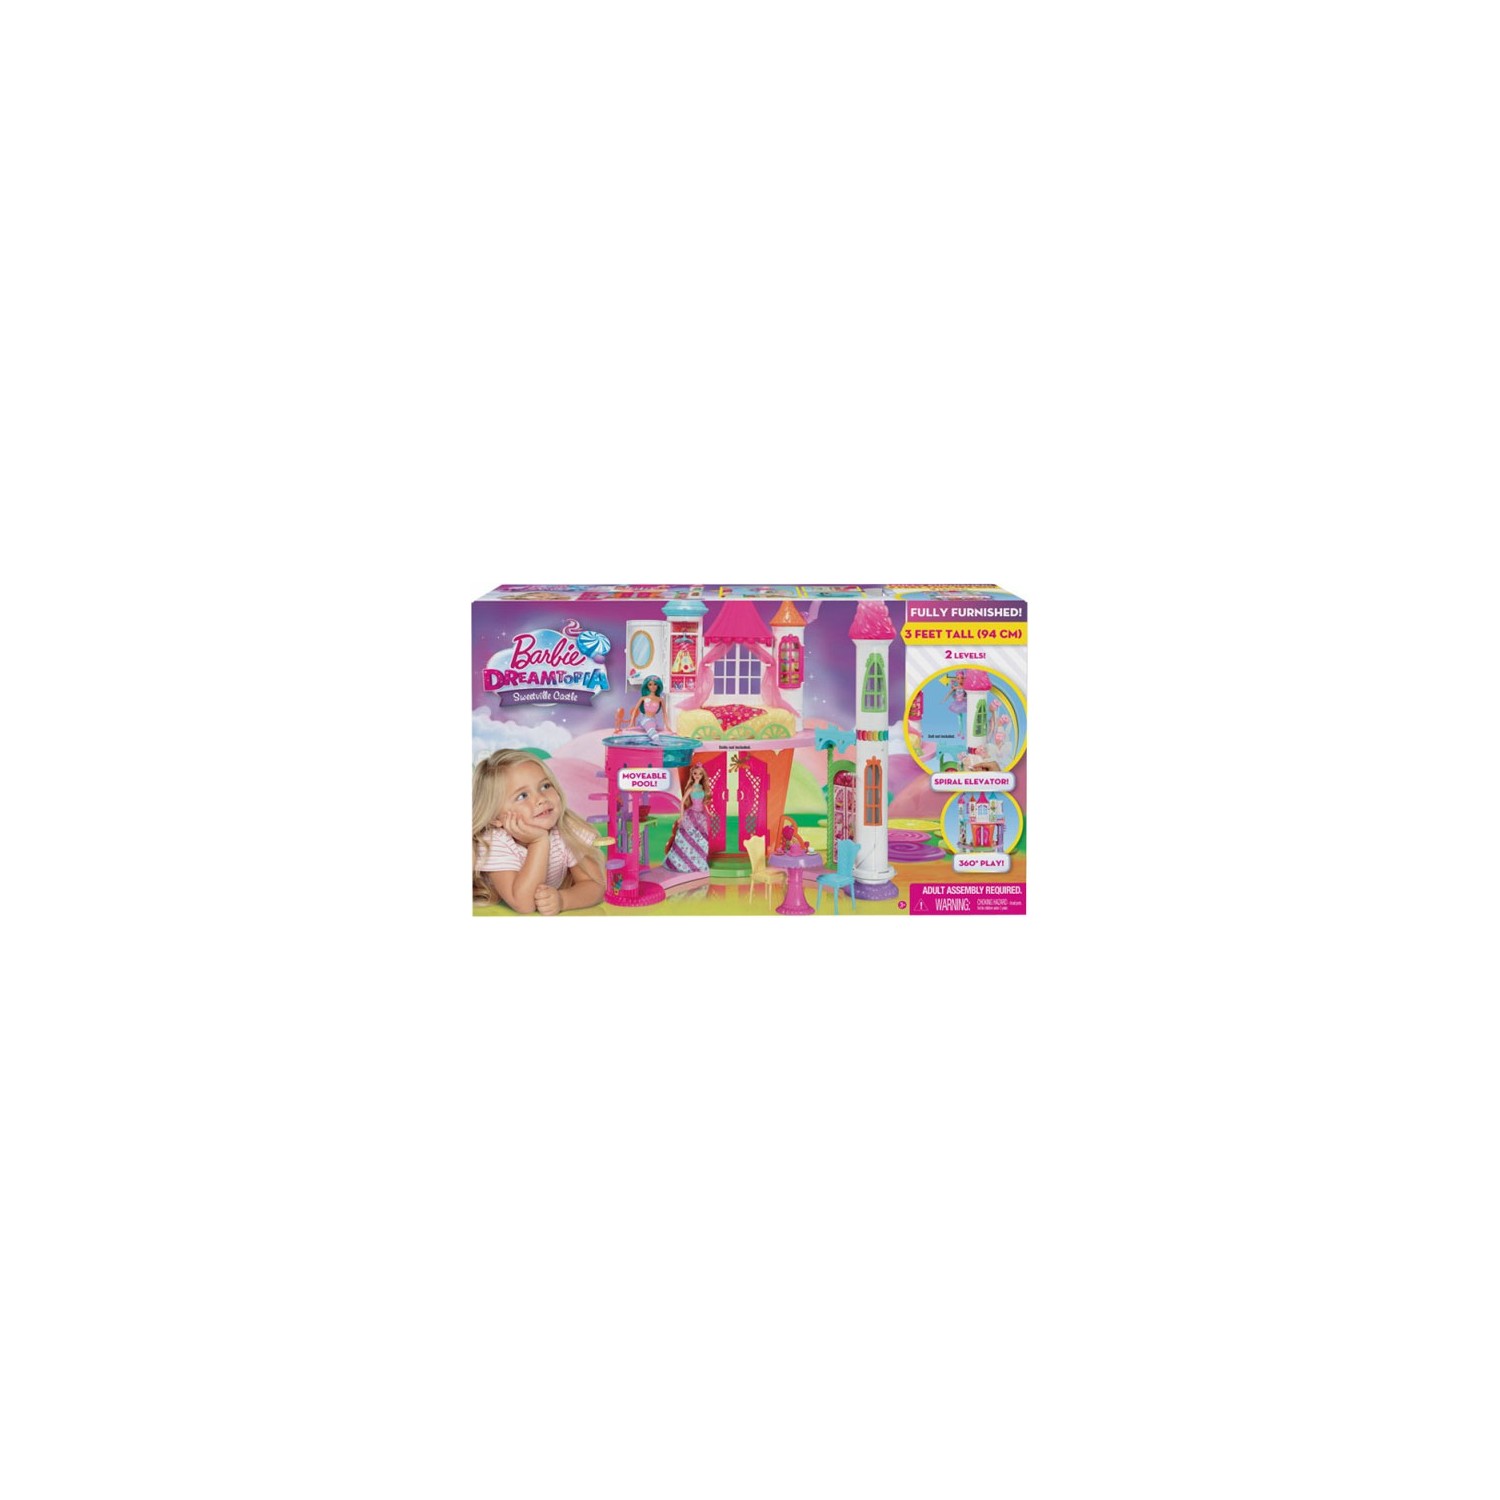 Кукла Barbie Dreamtopia Candy Kingdom Castle DYX32 замок люка ardо 651016770 bitron zv446h1 candy 49011687